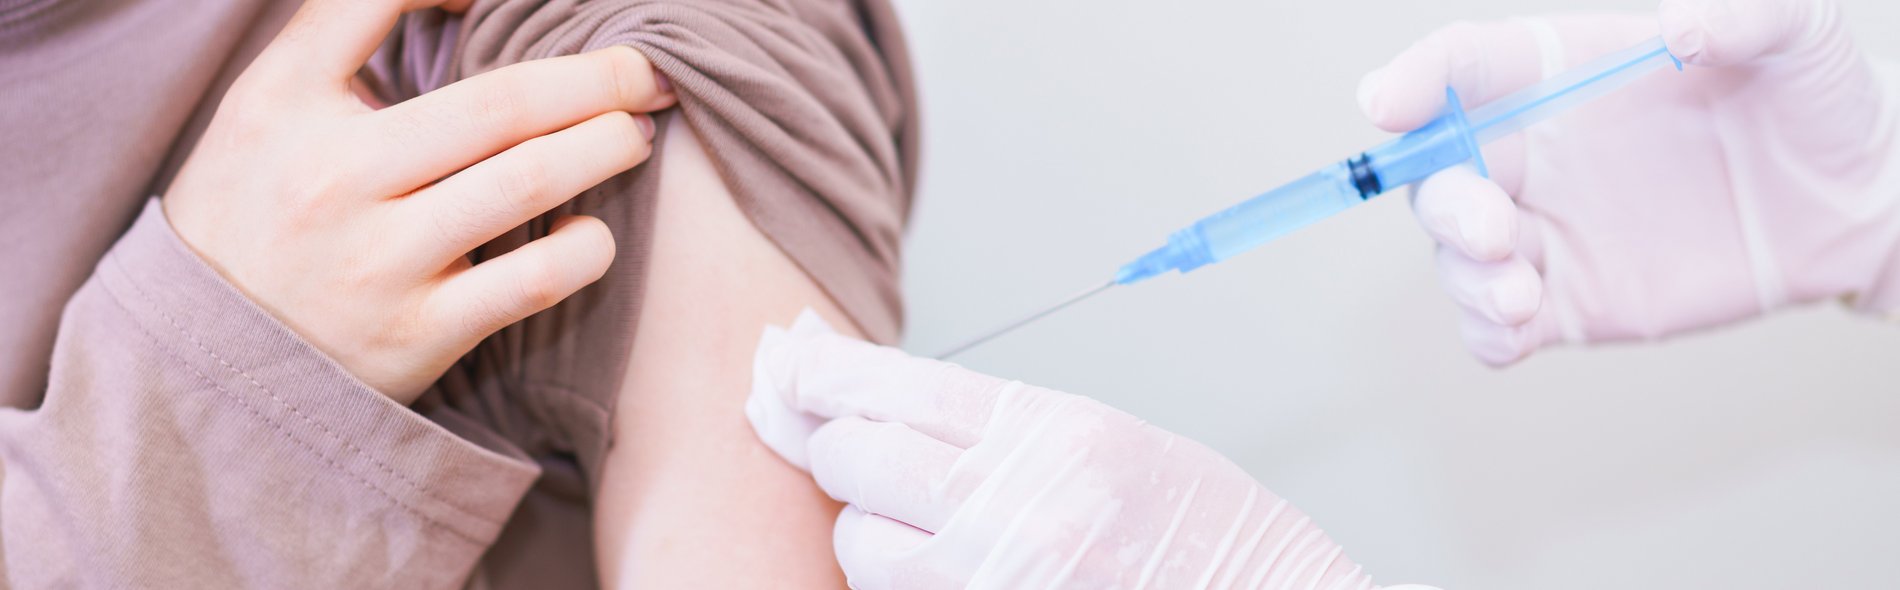 Hpv impfung vertraglichkeit - Hpv impfung unfruchtbarkeit